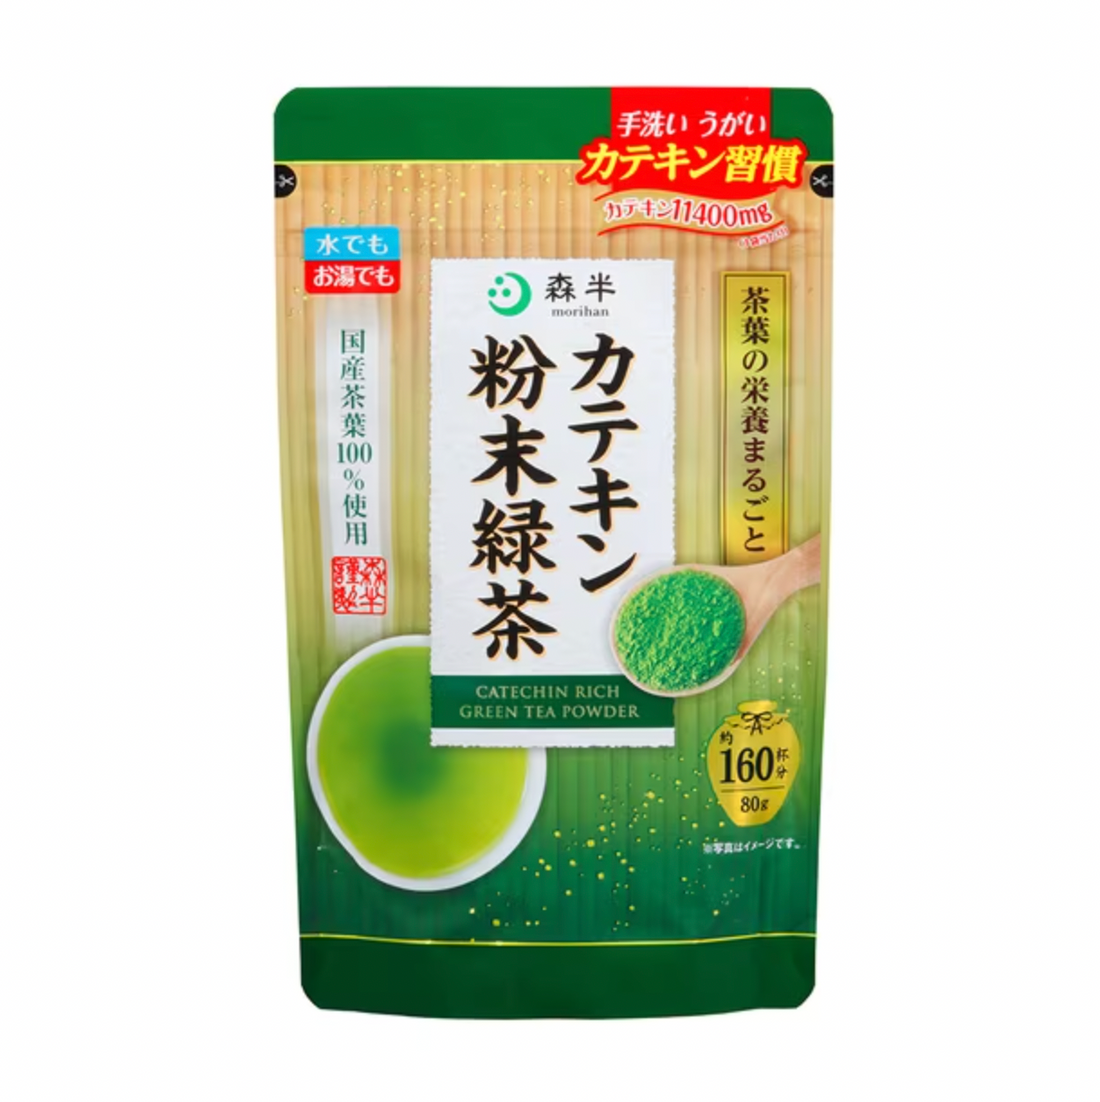 Morihan catechin powder green tea 80g